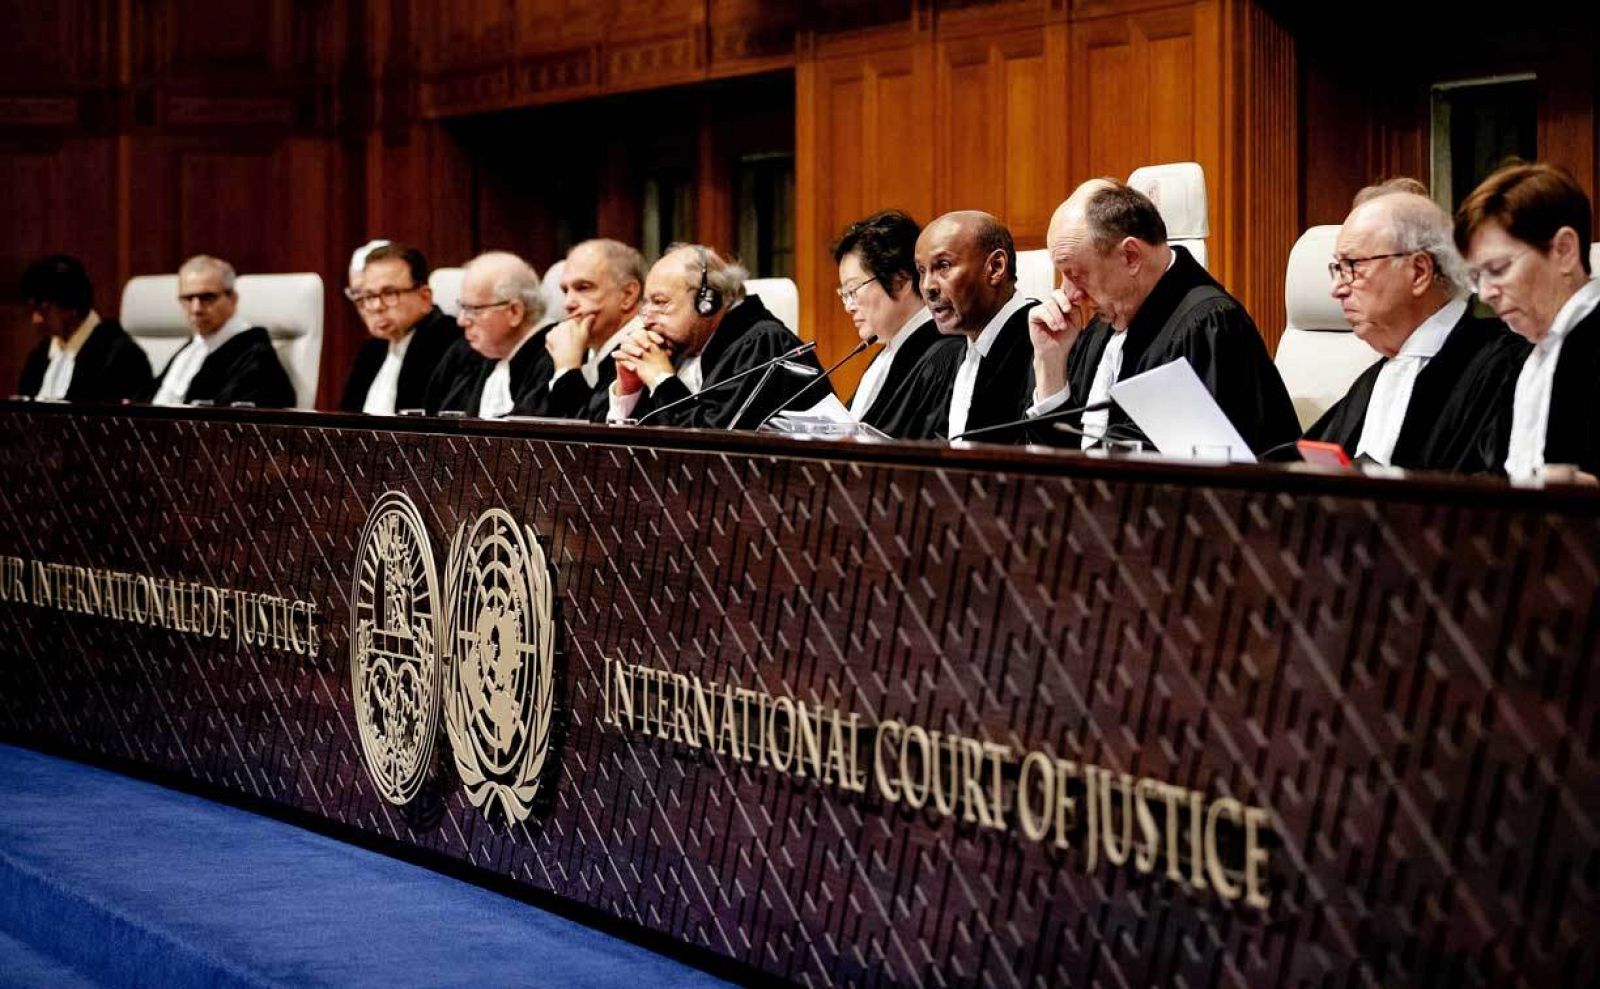 El presidente de la Corte Internacional de Justicia, Abdulqawi Ahmed Yusuf (4-R), dictaminó en la demanda presentada por Gambia contra Myanmar, durante una sesión judicial en La Haya, Países Bajos, el 23 de enero de 2020.